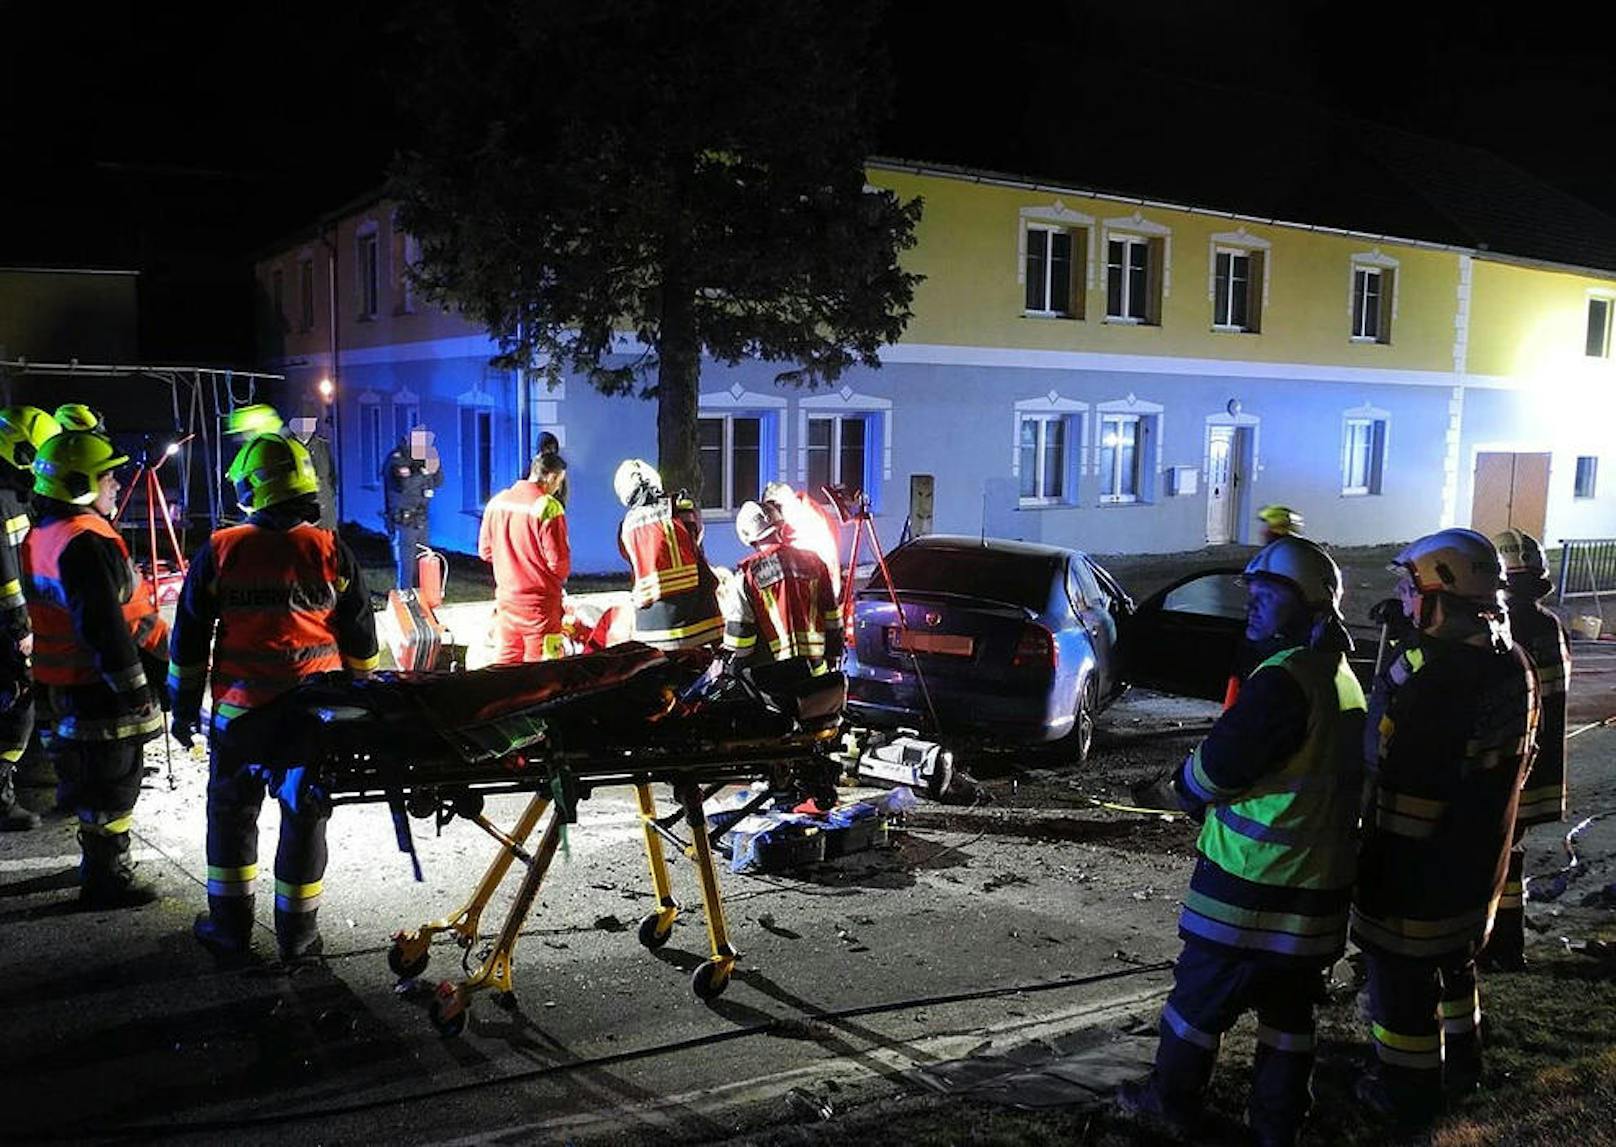 Bei dem Unfall zog sich der 31-Jährige lebensgefährliche Verletzungen zu. Nach der medizinischen Erstversorgung an der Unglücksstelle wurde er mit dem Notarzthubschrauber "Christophorus 2" in das Krankenhaus St. Pölten geflogen.